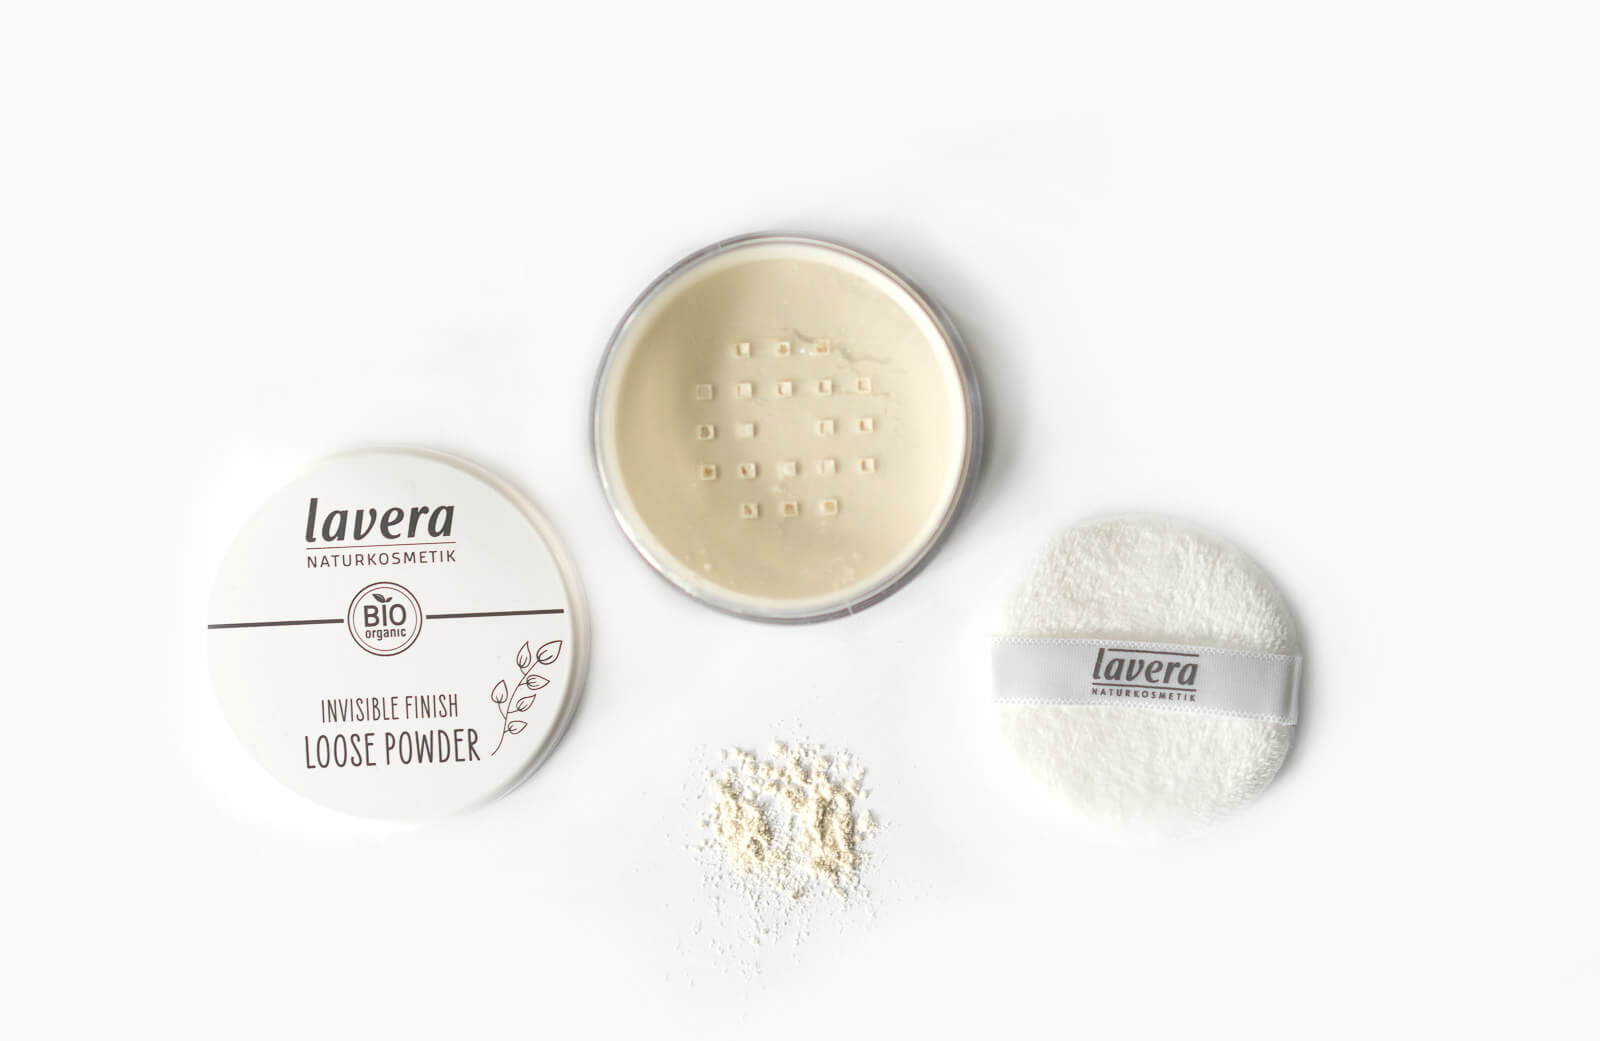 lavera - Dekorative Kosmetik - Neu im Sortiment - Bronzer, Rouge, Grundierung und Eyeshadows 6